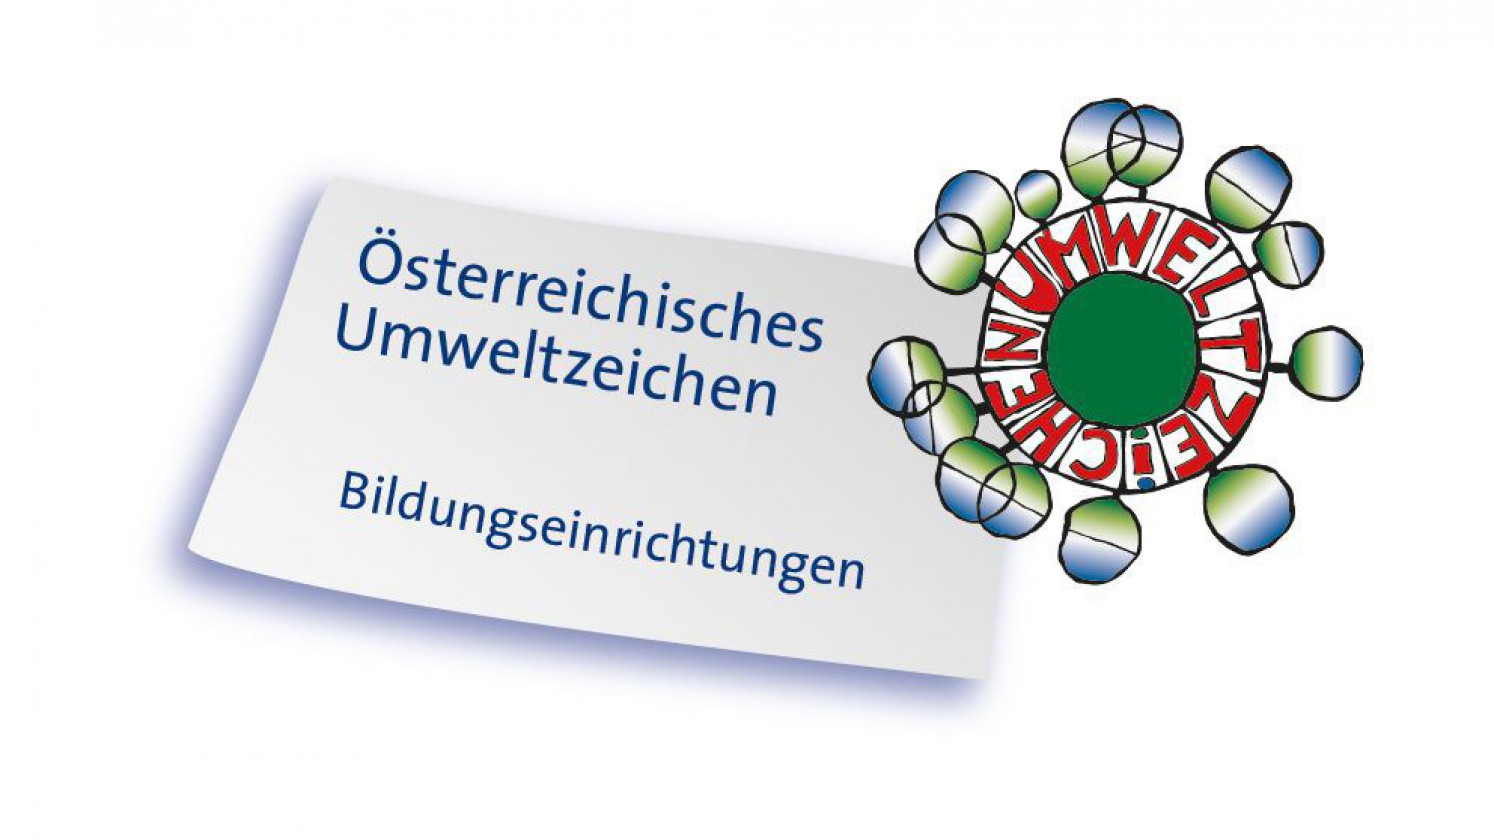 Österreichisches Umweltzeichen für Bildungseinrichtungen